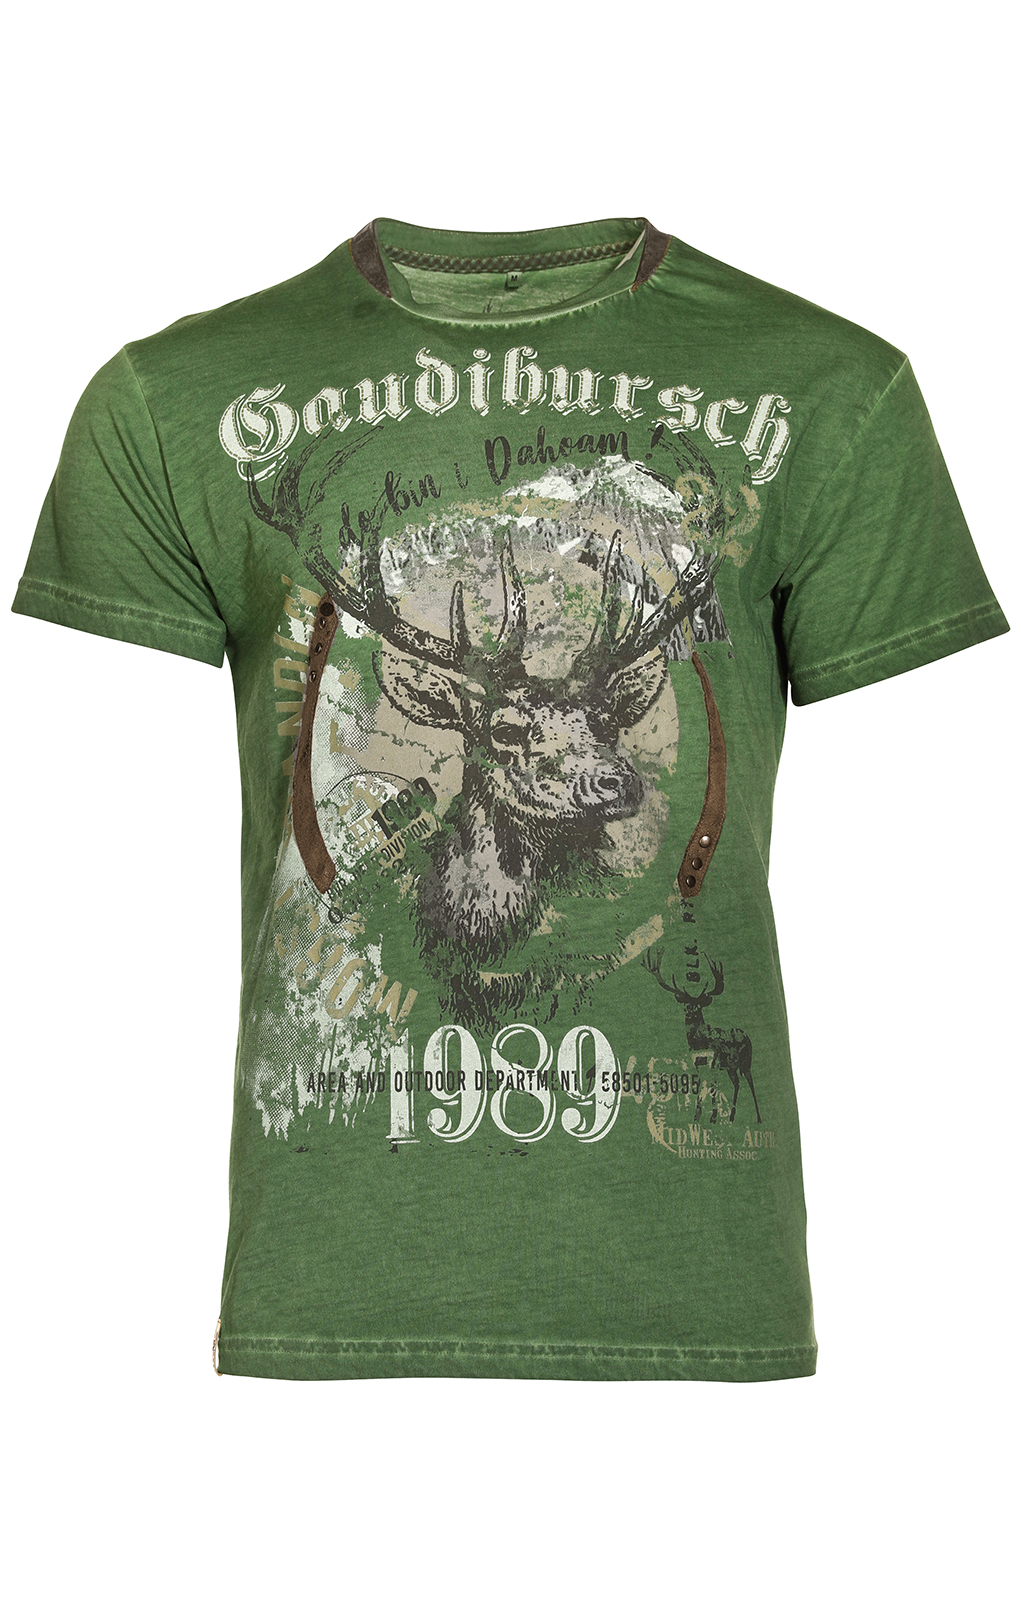 weitere Bilder von Kostuums T-shirt B36 - GAUDIBURSCH groen